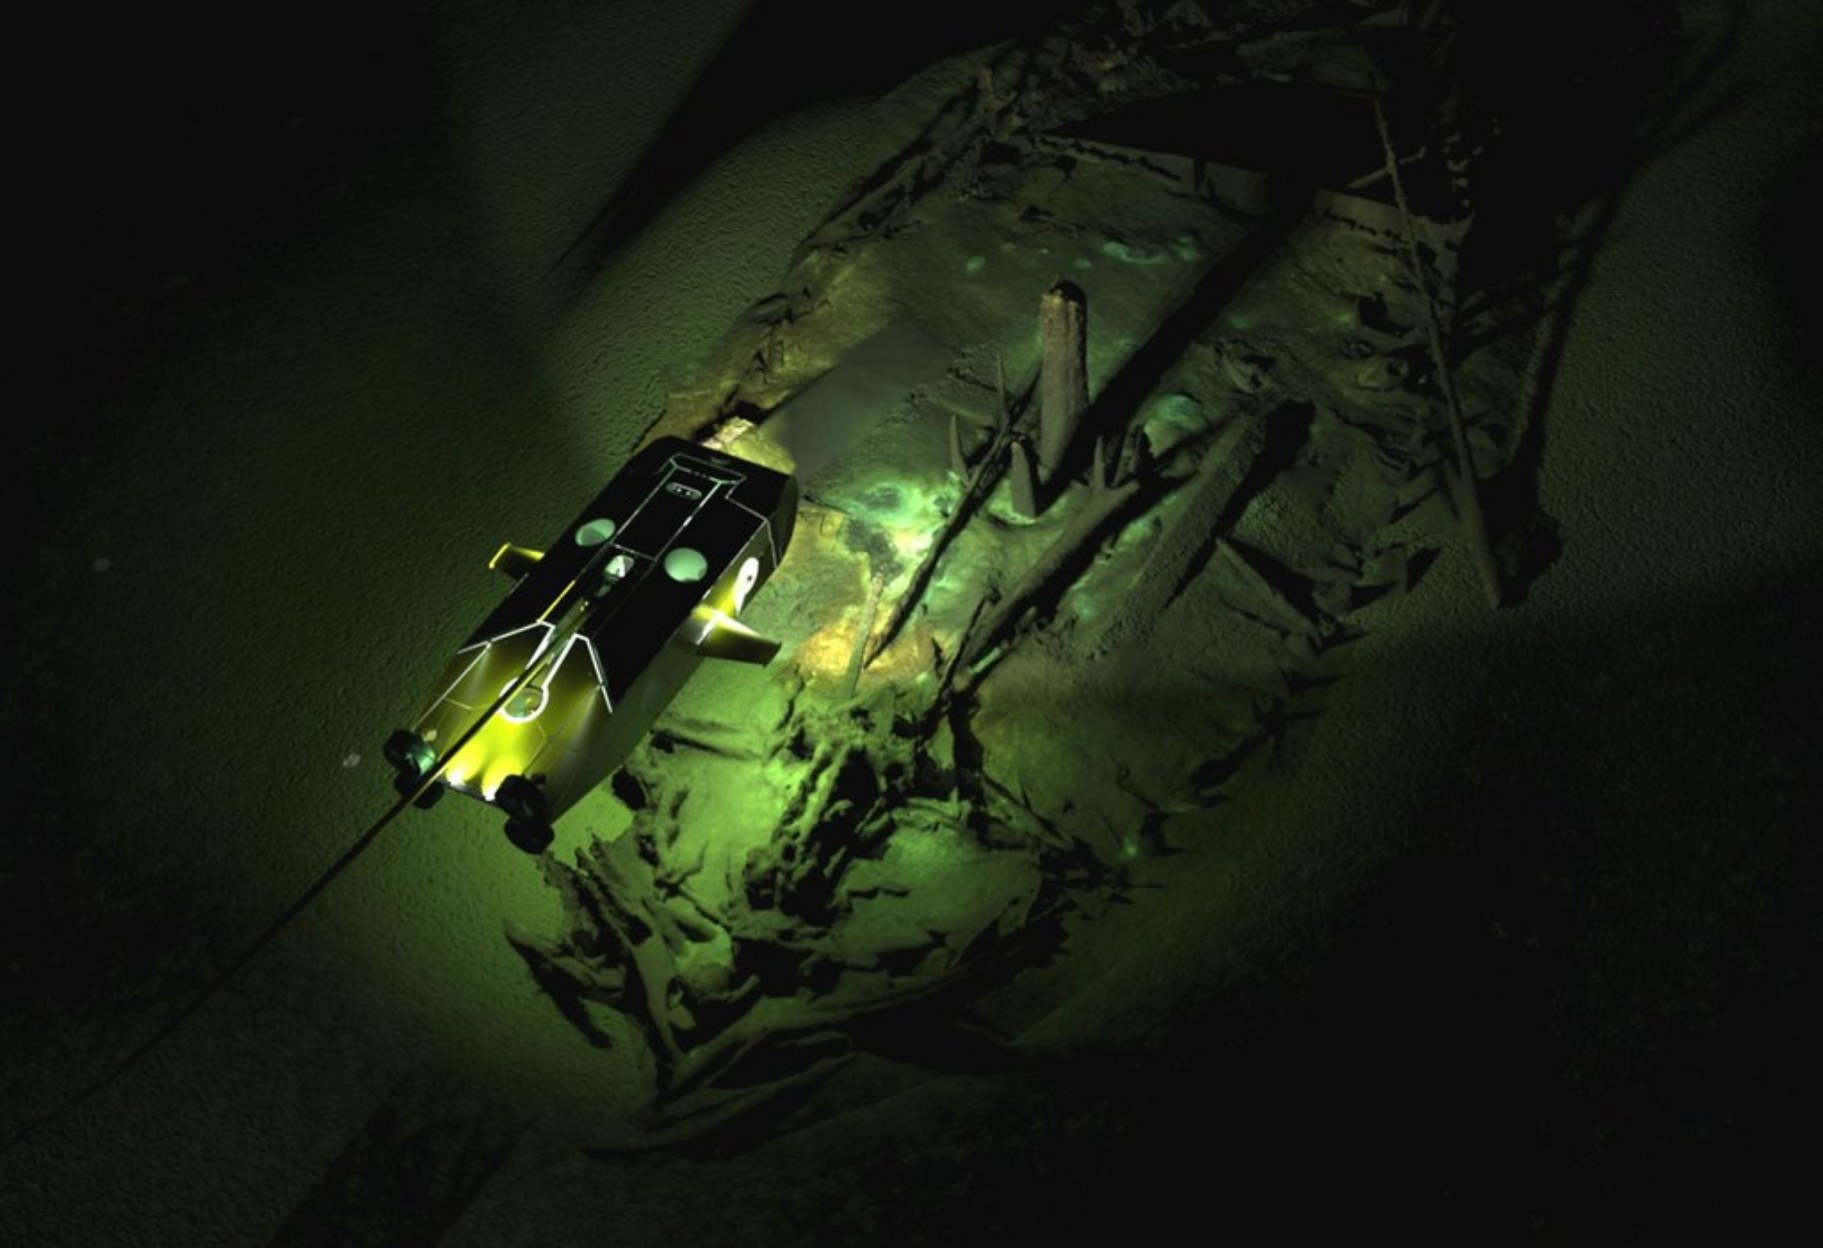 बीजान्टिन मलबे की एक फोटोग्रामेट्रिक छवि, जो शायद नौवीं शताब्दी की है। सुपरइंपोज़्ड अभियान के बंधे हुए रोबोटों में से एक की एक छवि है जिसने खोए हुए जहाजों की तस्वीरें खींची हैं।